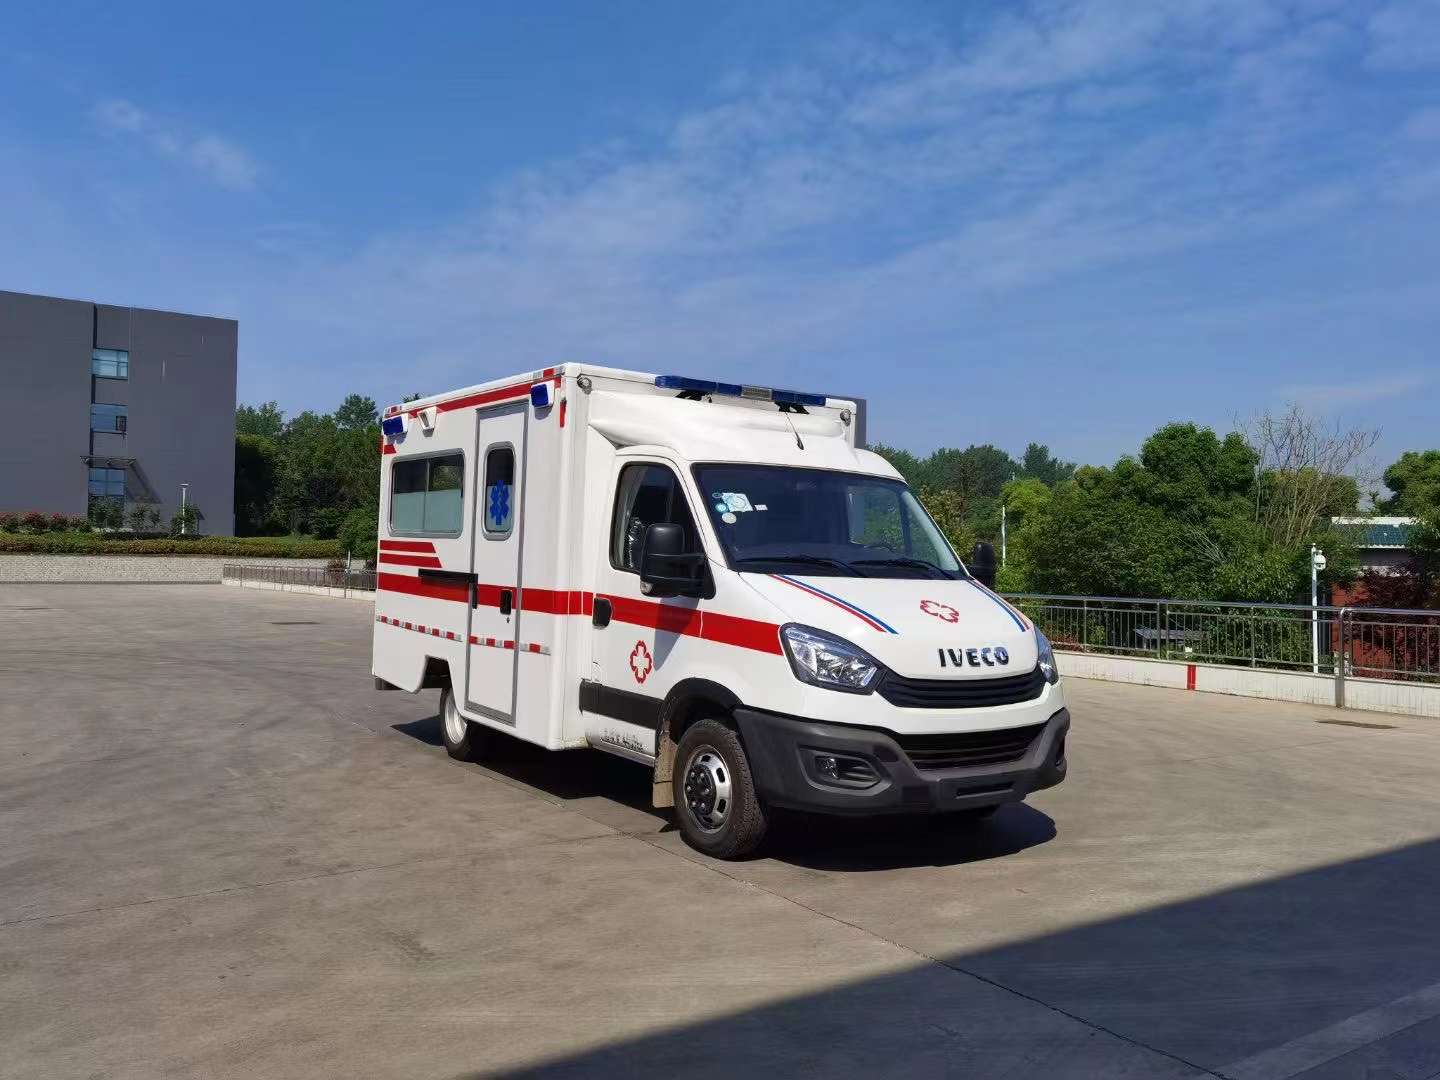 鹰潭120急救车转院病人长途跨省运送紧急到达